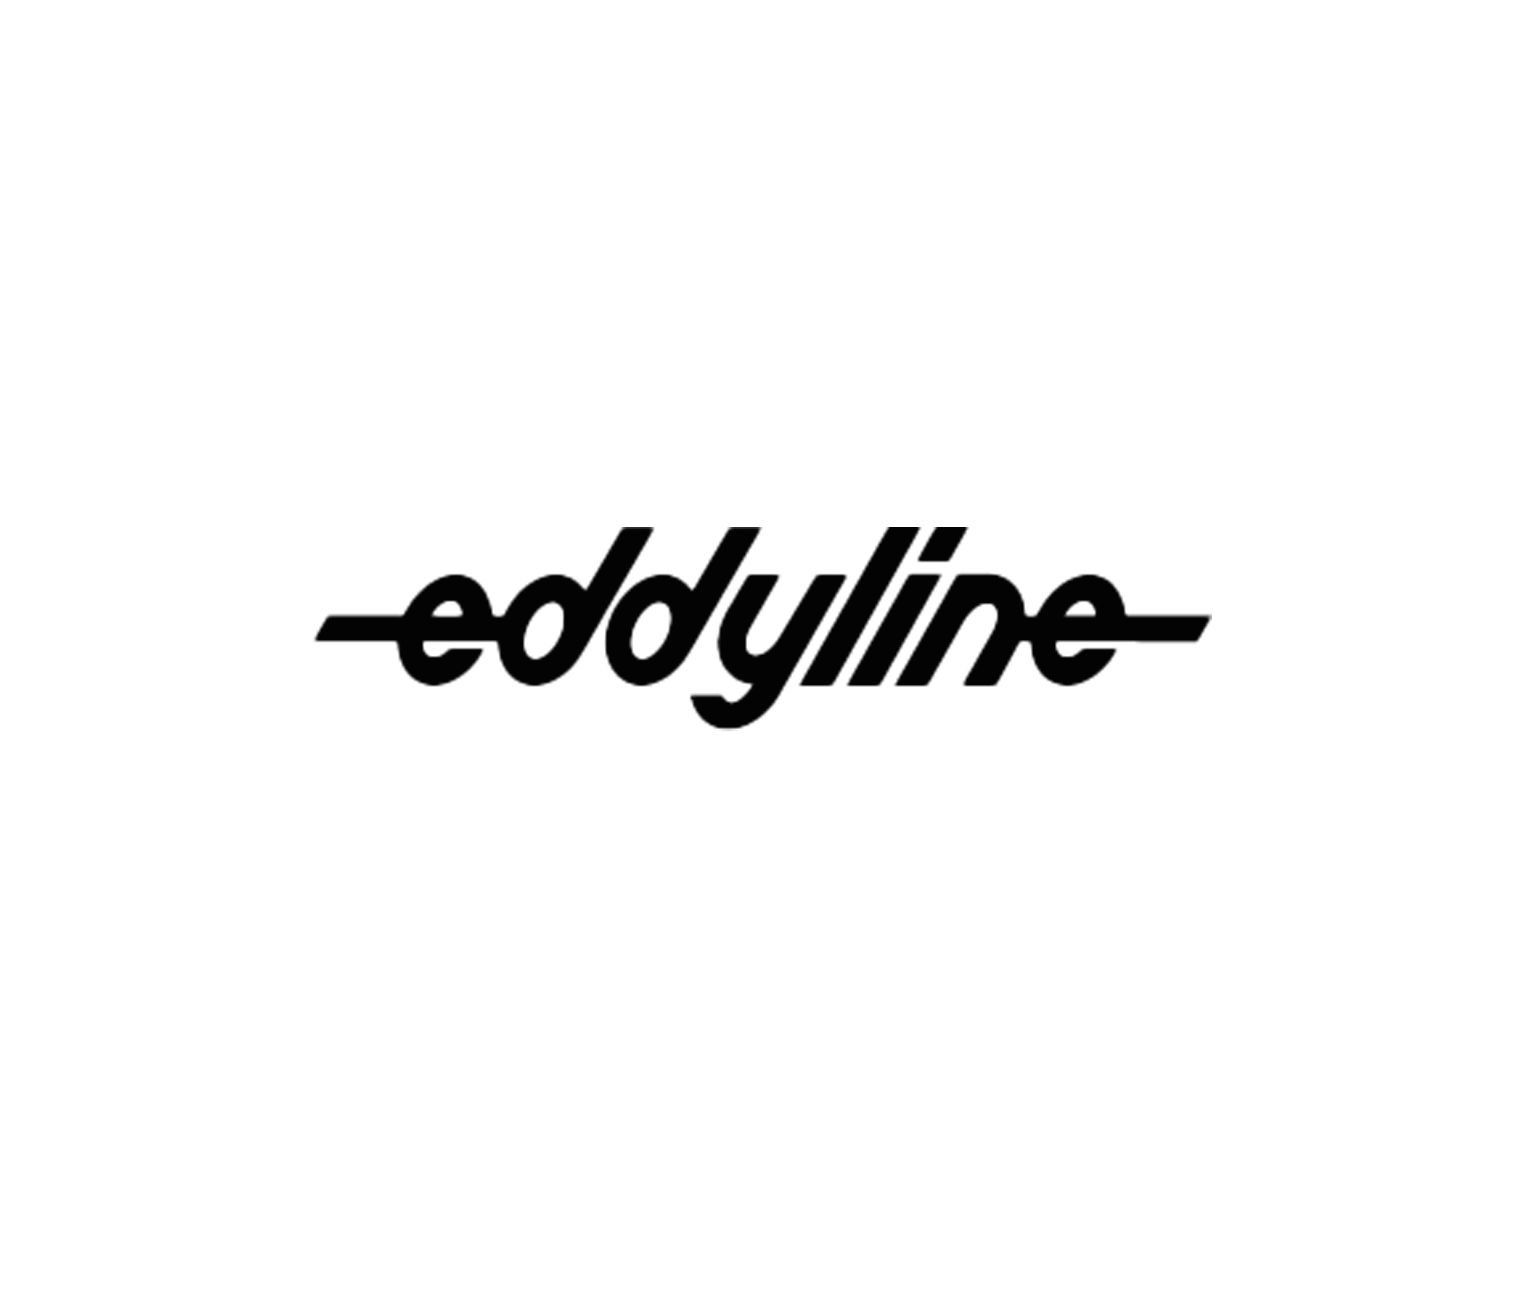 Eddyline Decal